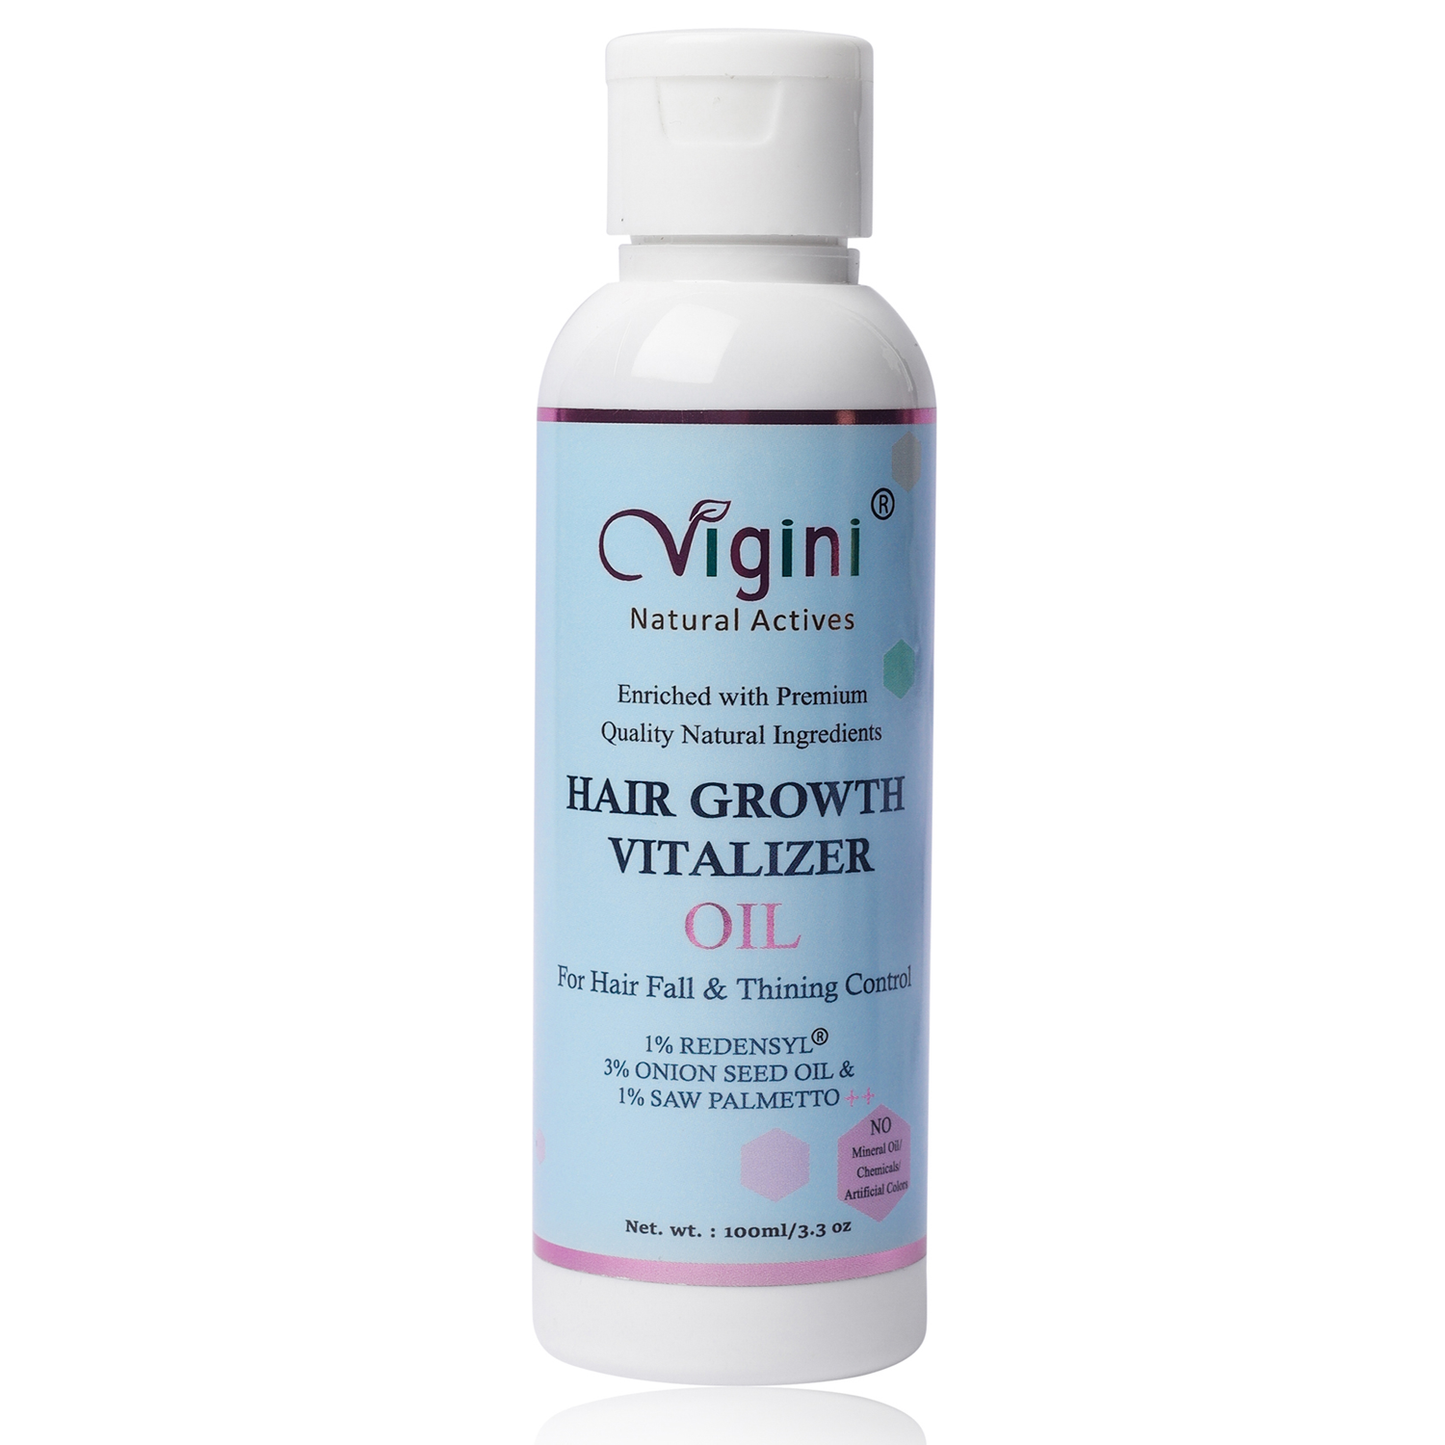 Hair Growth Vitalizer Oil